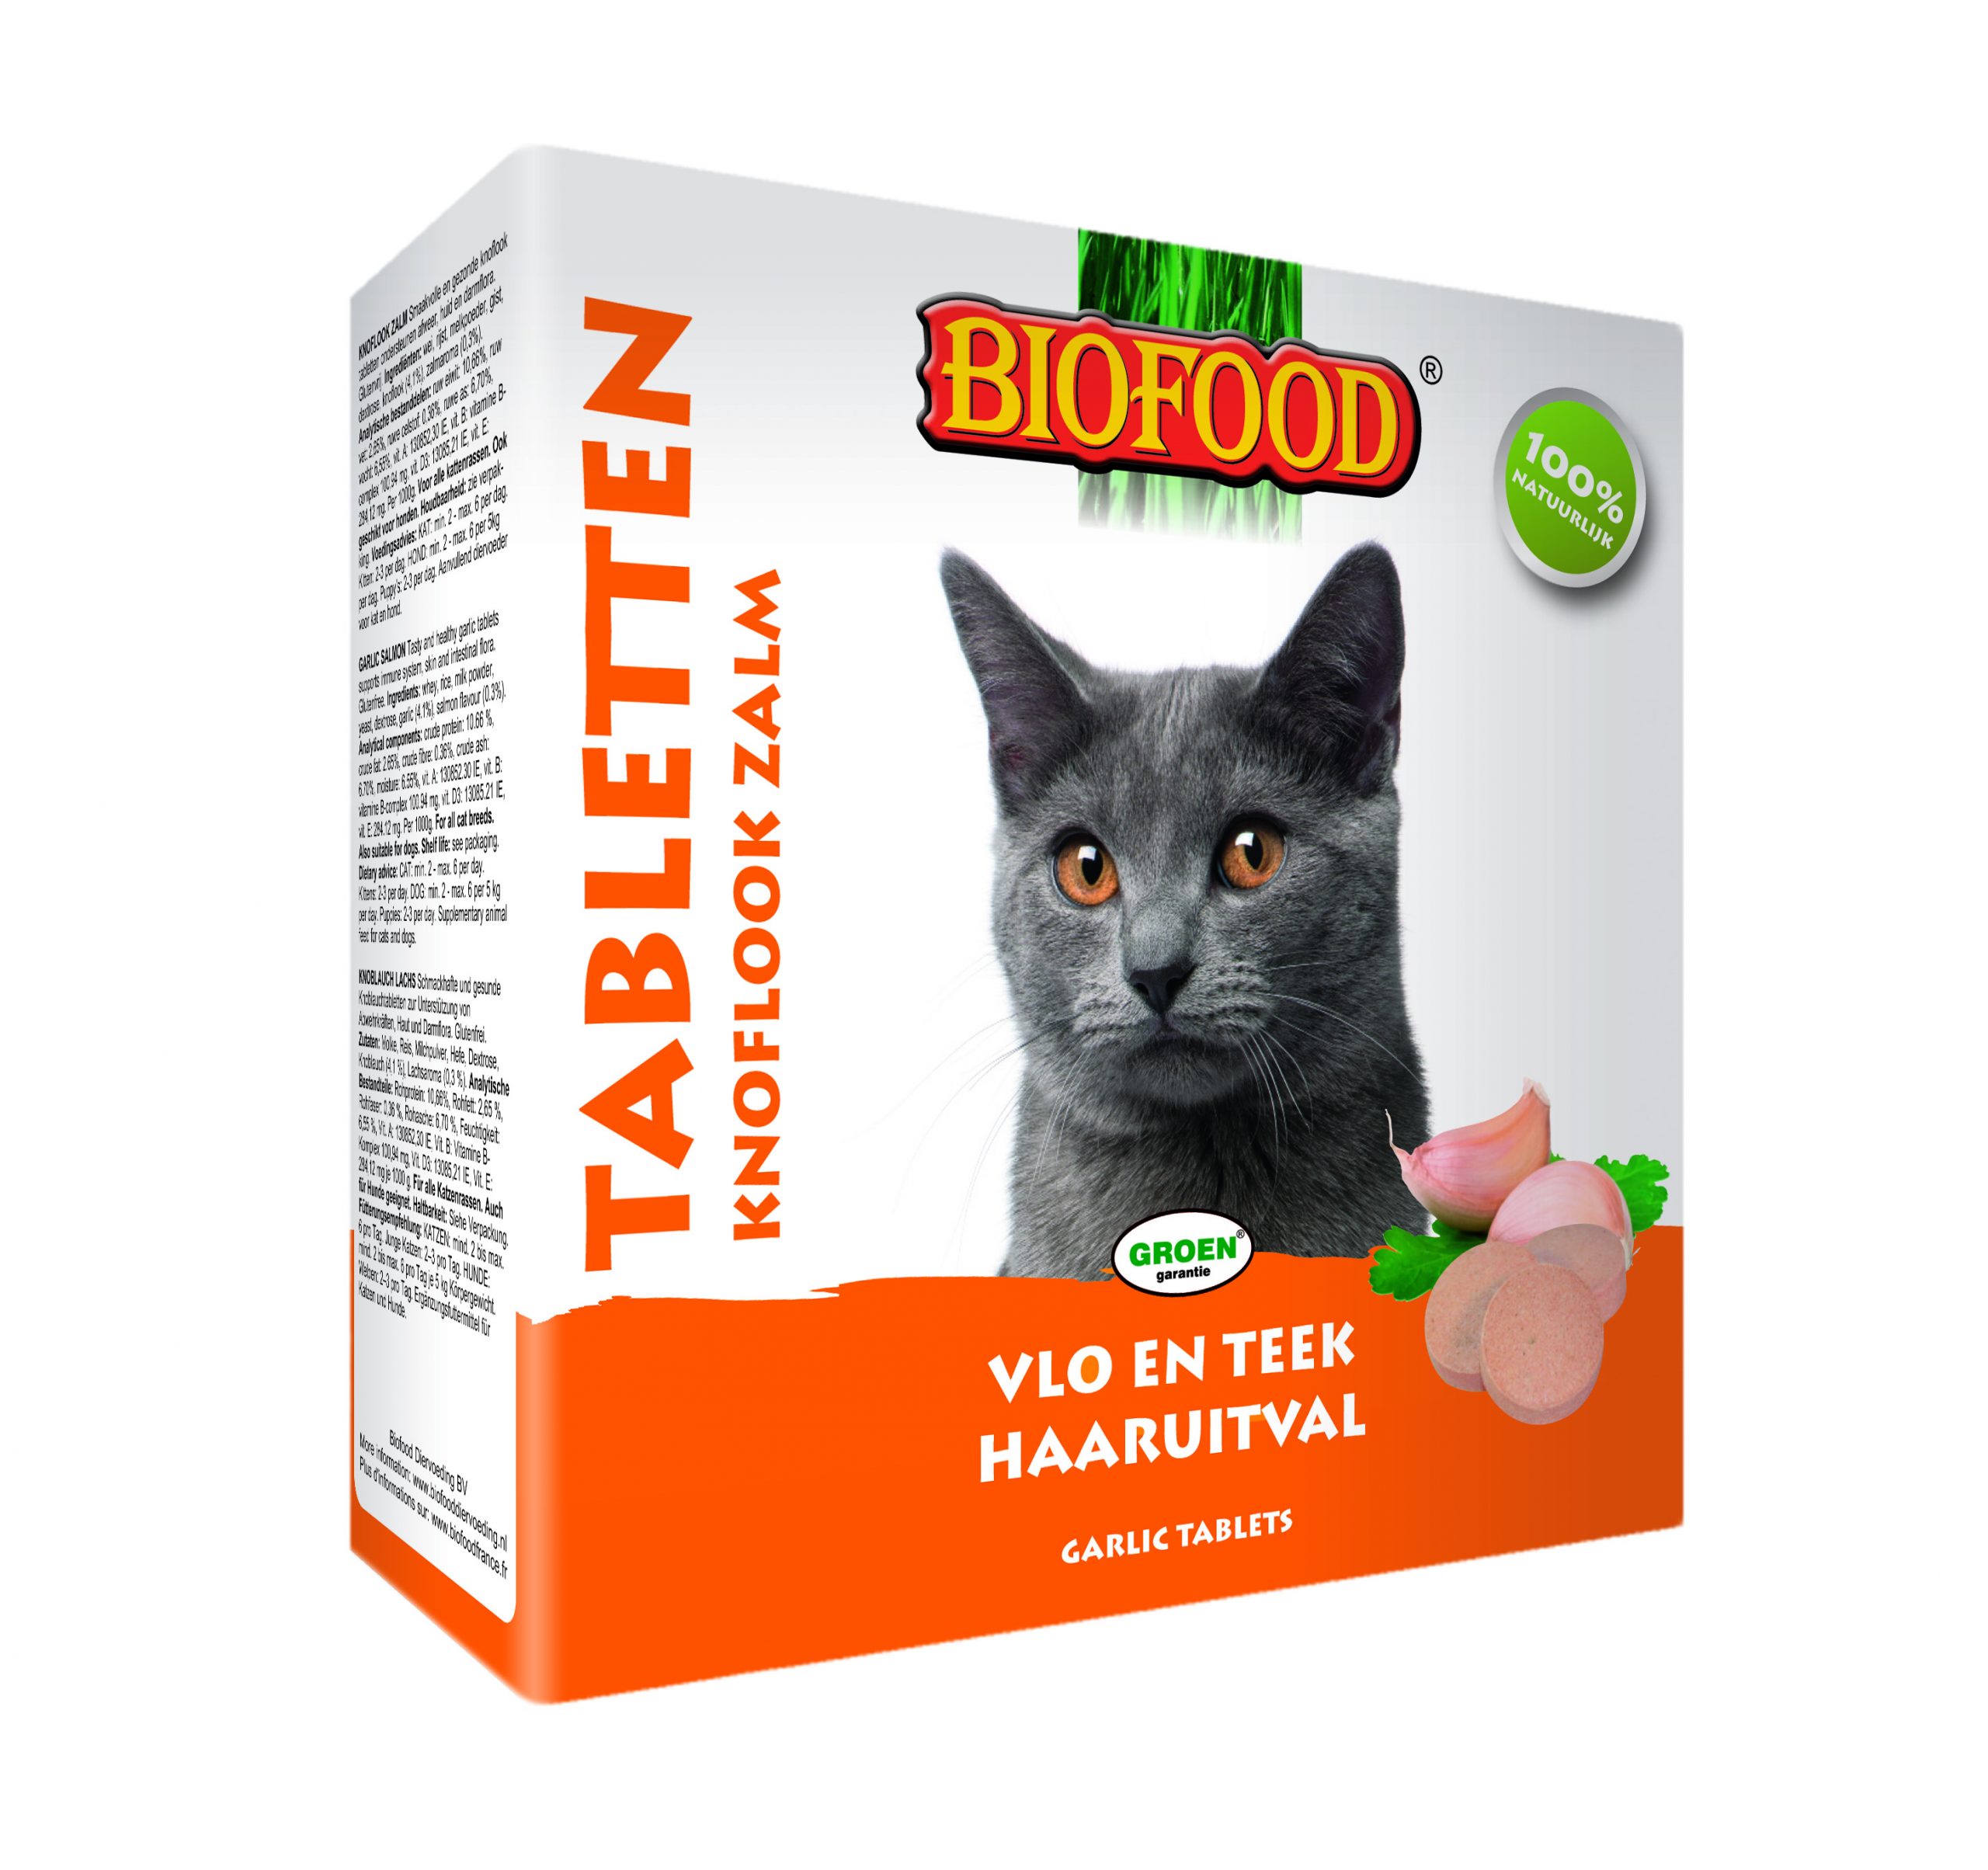 Verstoring verraden Email schrijven Biofood kattensnoepjes zalm anti-vlo 100 stuks - Dierspeciaalmagazijn.  Complete dierspeciaalzaak